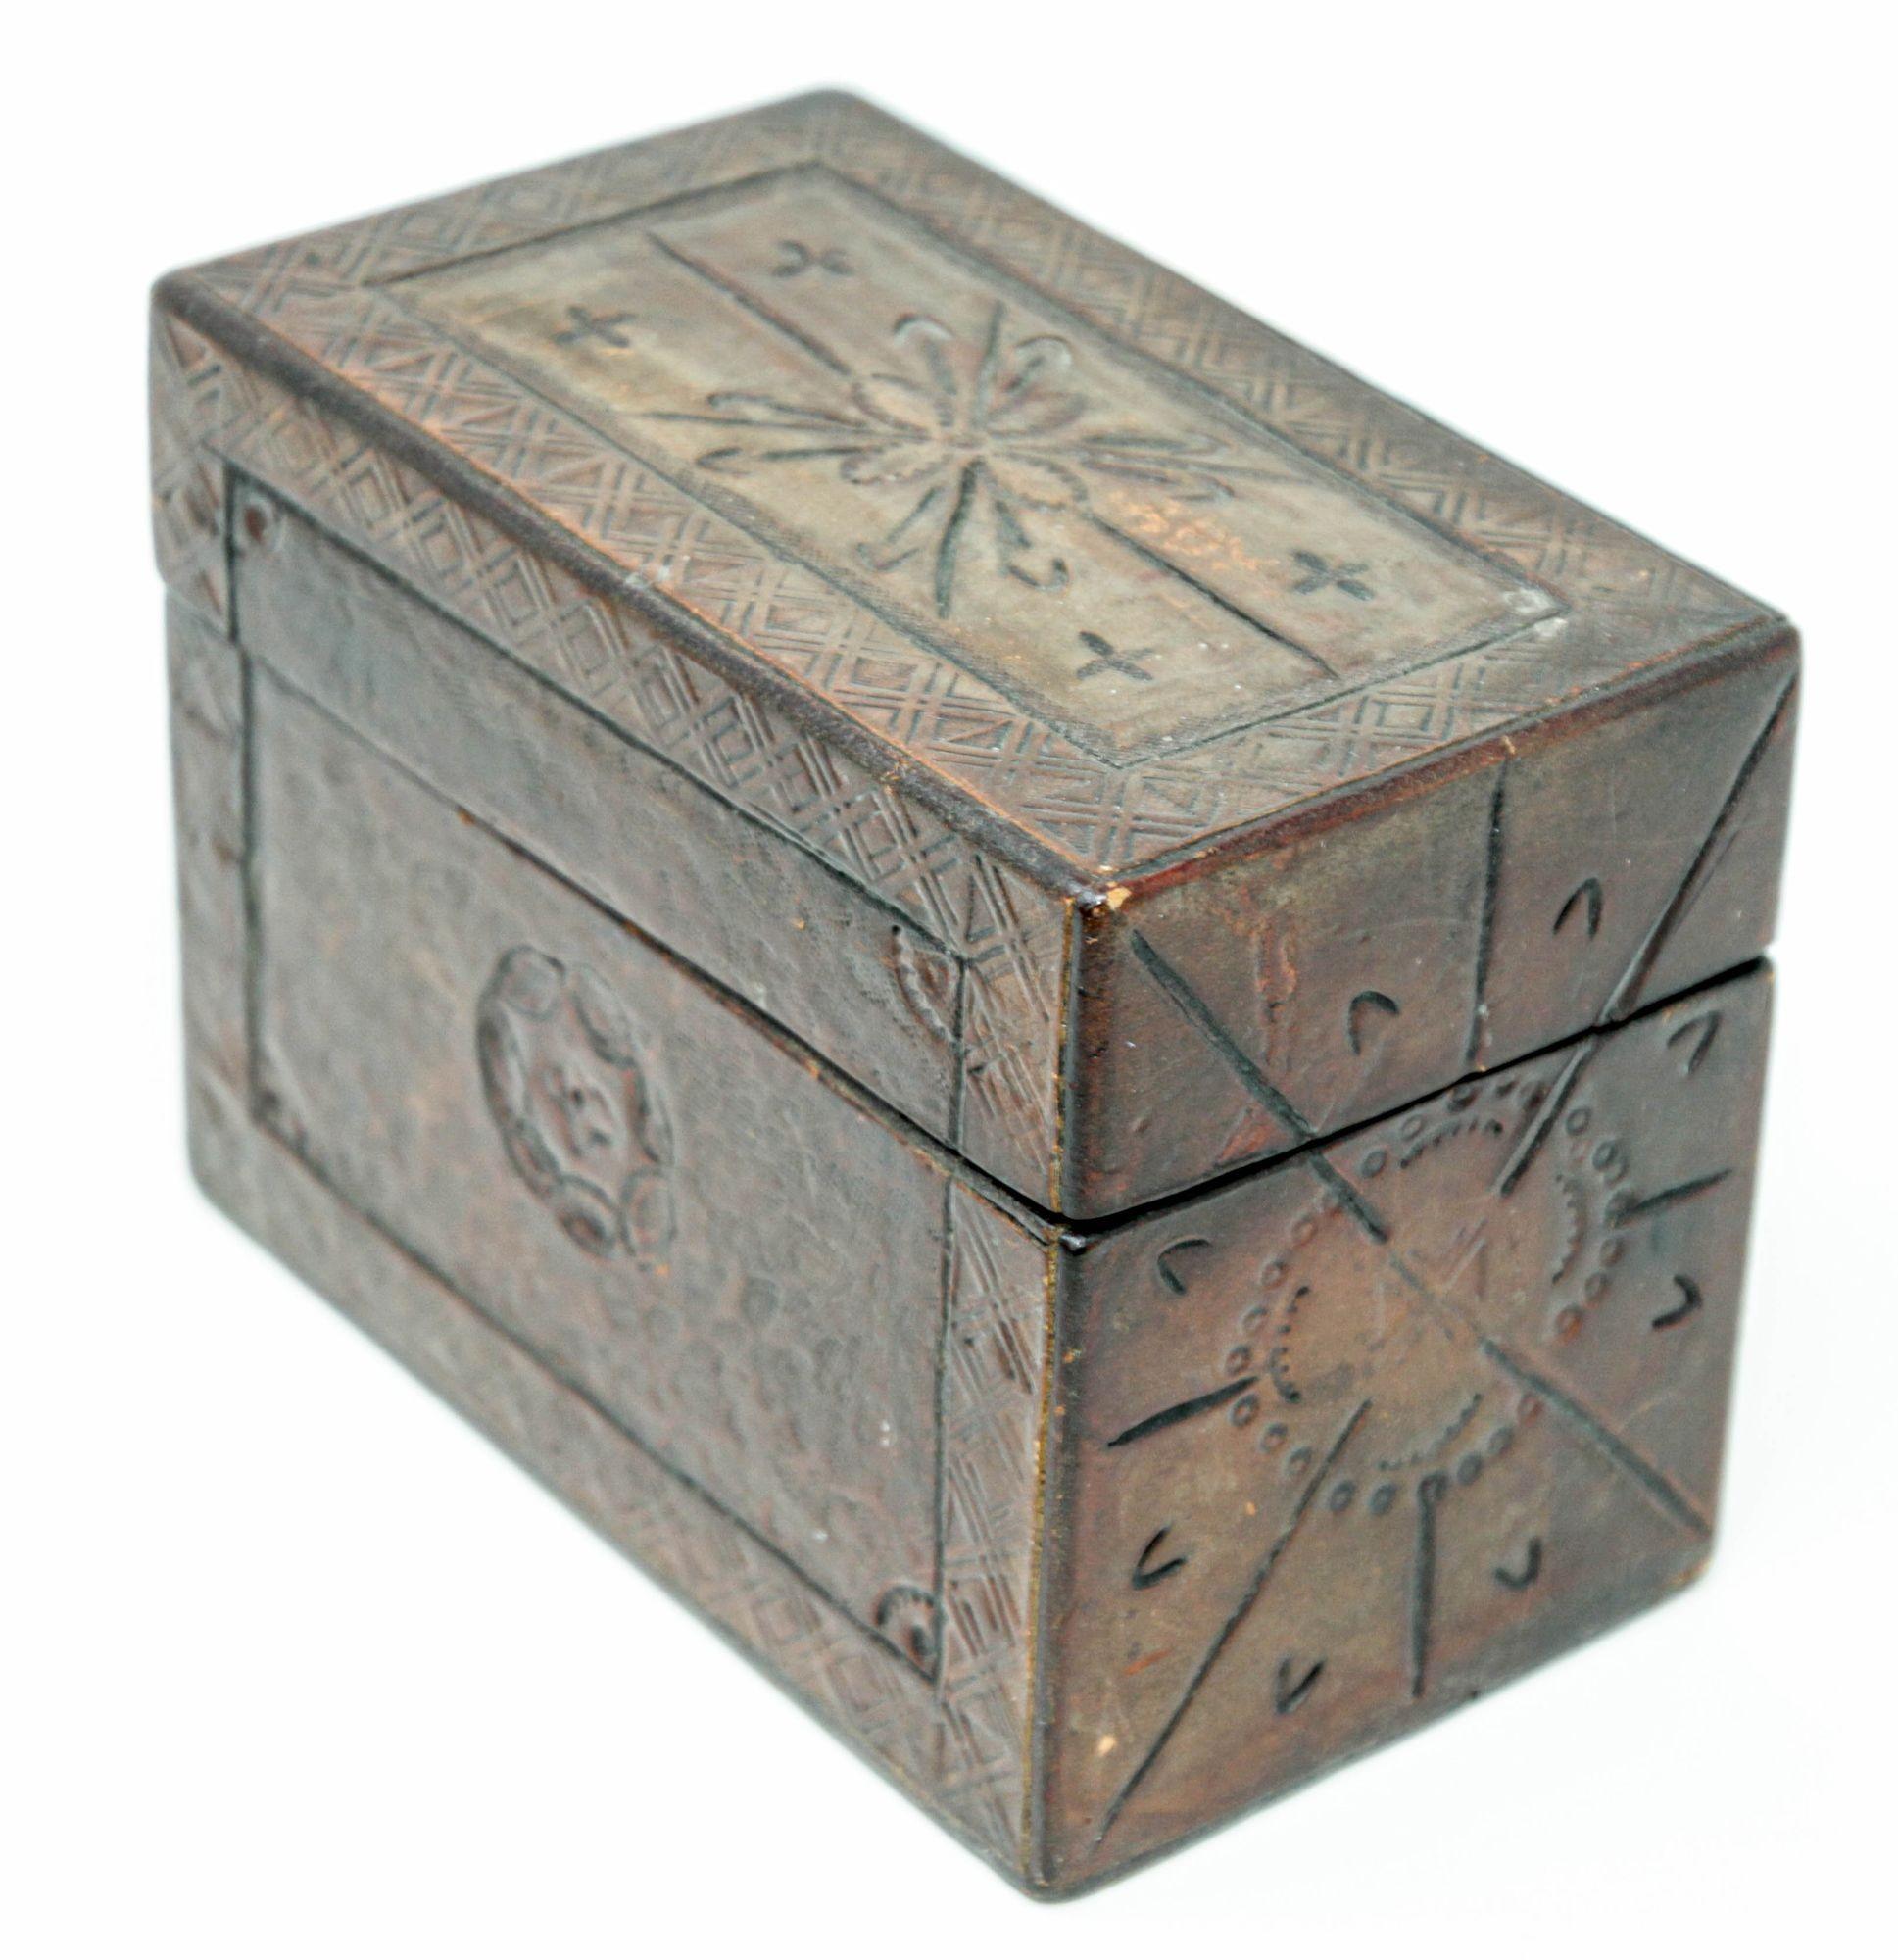 Vintage Hand Tooled Leather Wooden Box.
Rustikale Schachtel aus mexikanischem Leder mit Filzauskleidung.
Handgefertigte dekorative Schatulle aus Leder im spanischen Kolonialstil, Schmuckschatulle, Schmuckkästchen oder